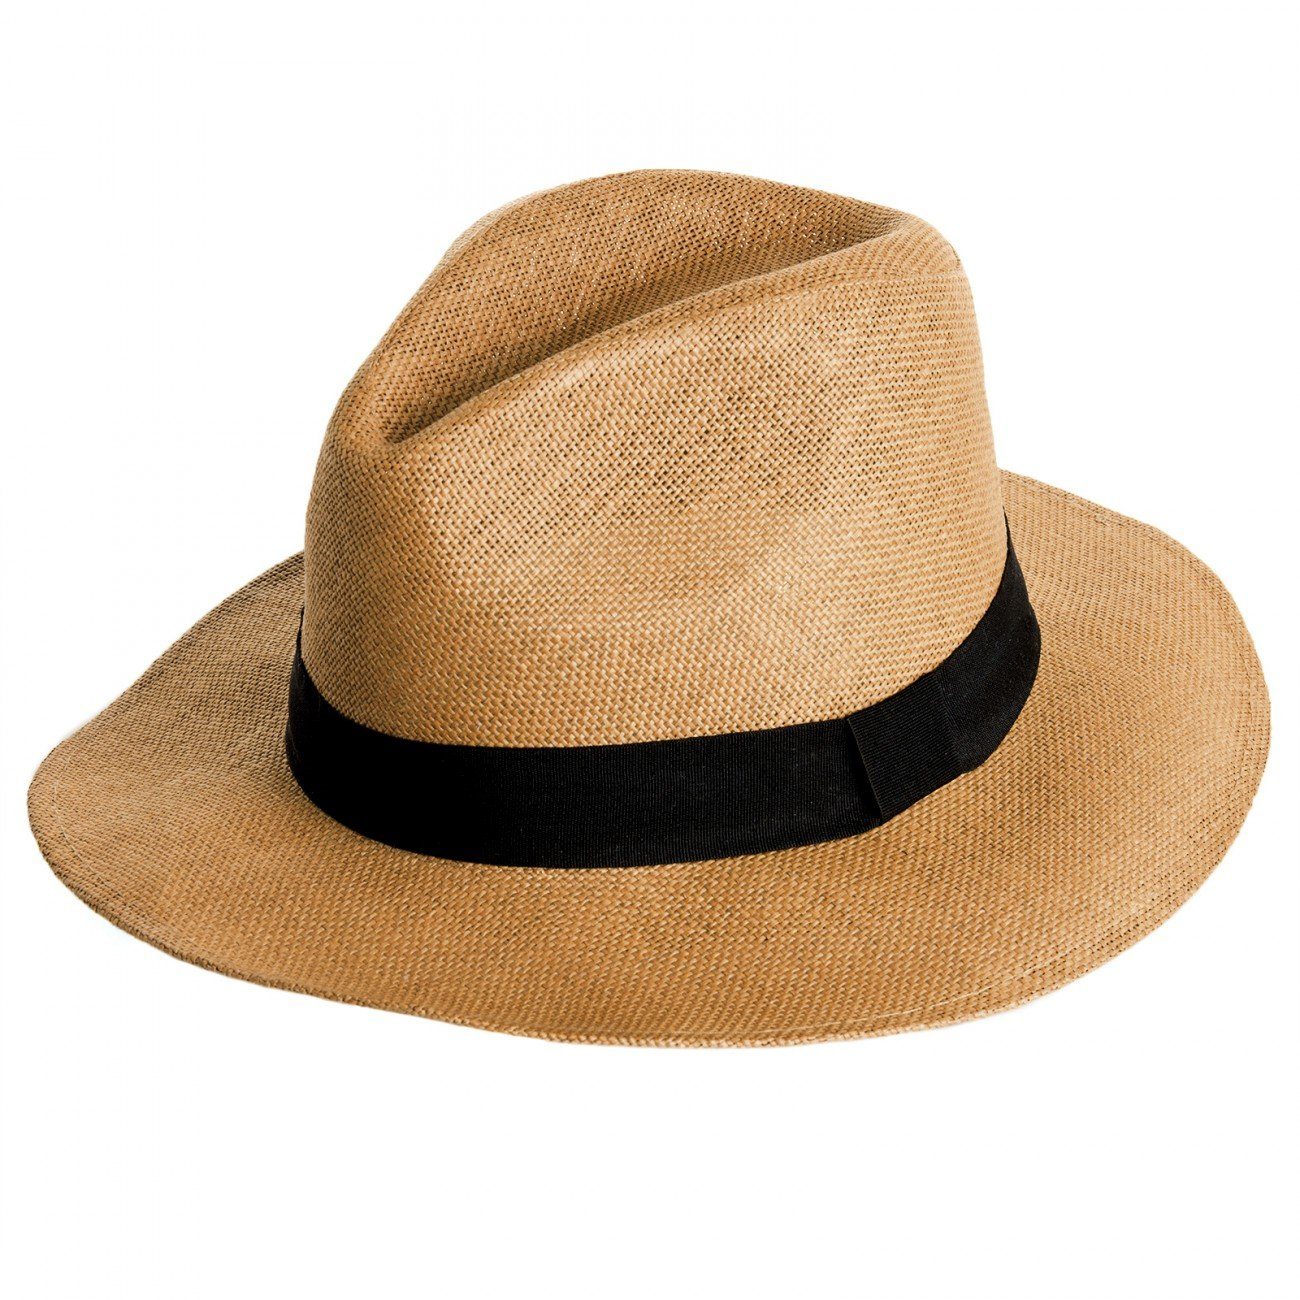 Caspar Strohhut HT010 klassischer Herren Panama Hut mit breitem schwarzen Band braun